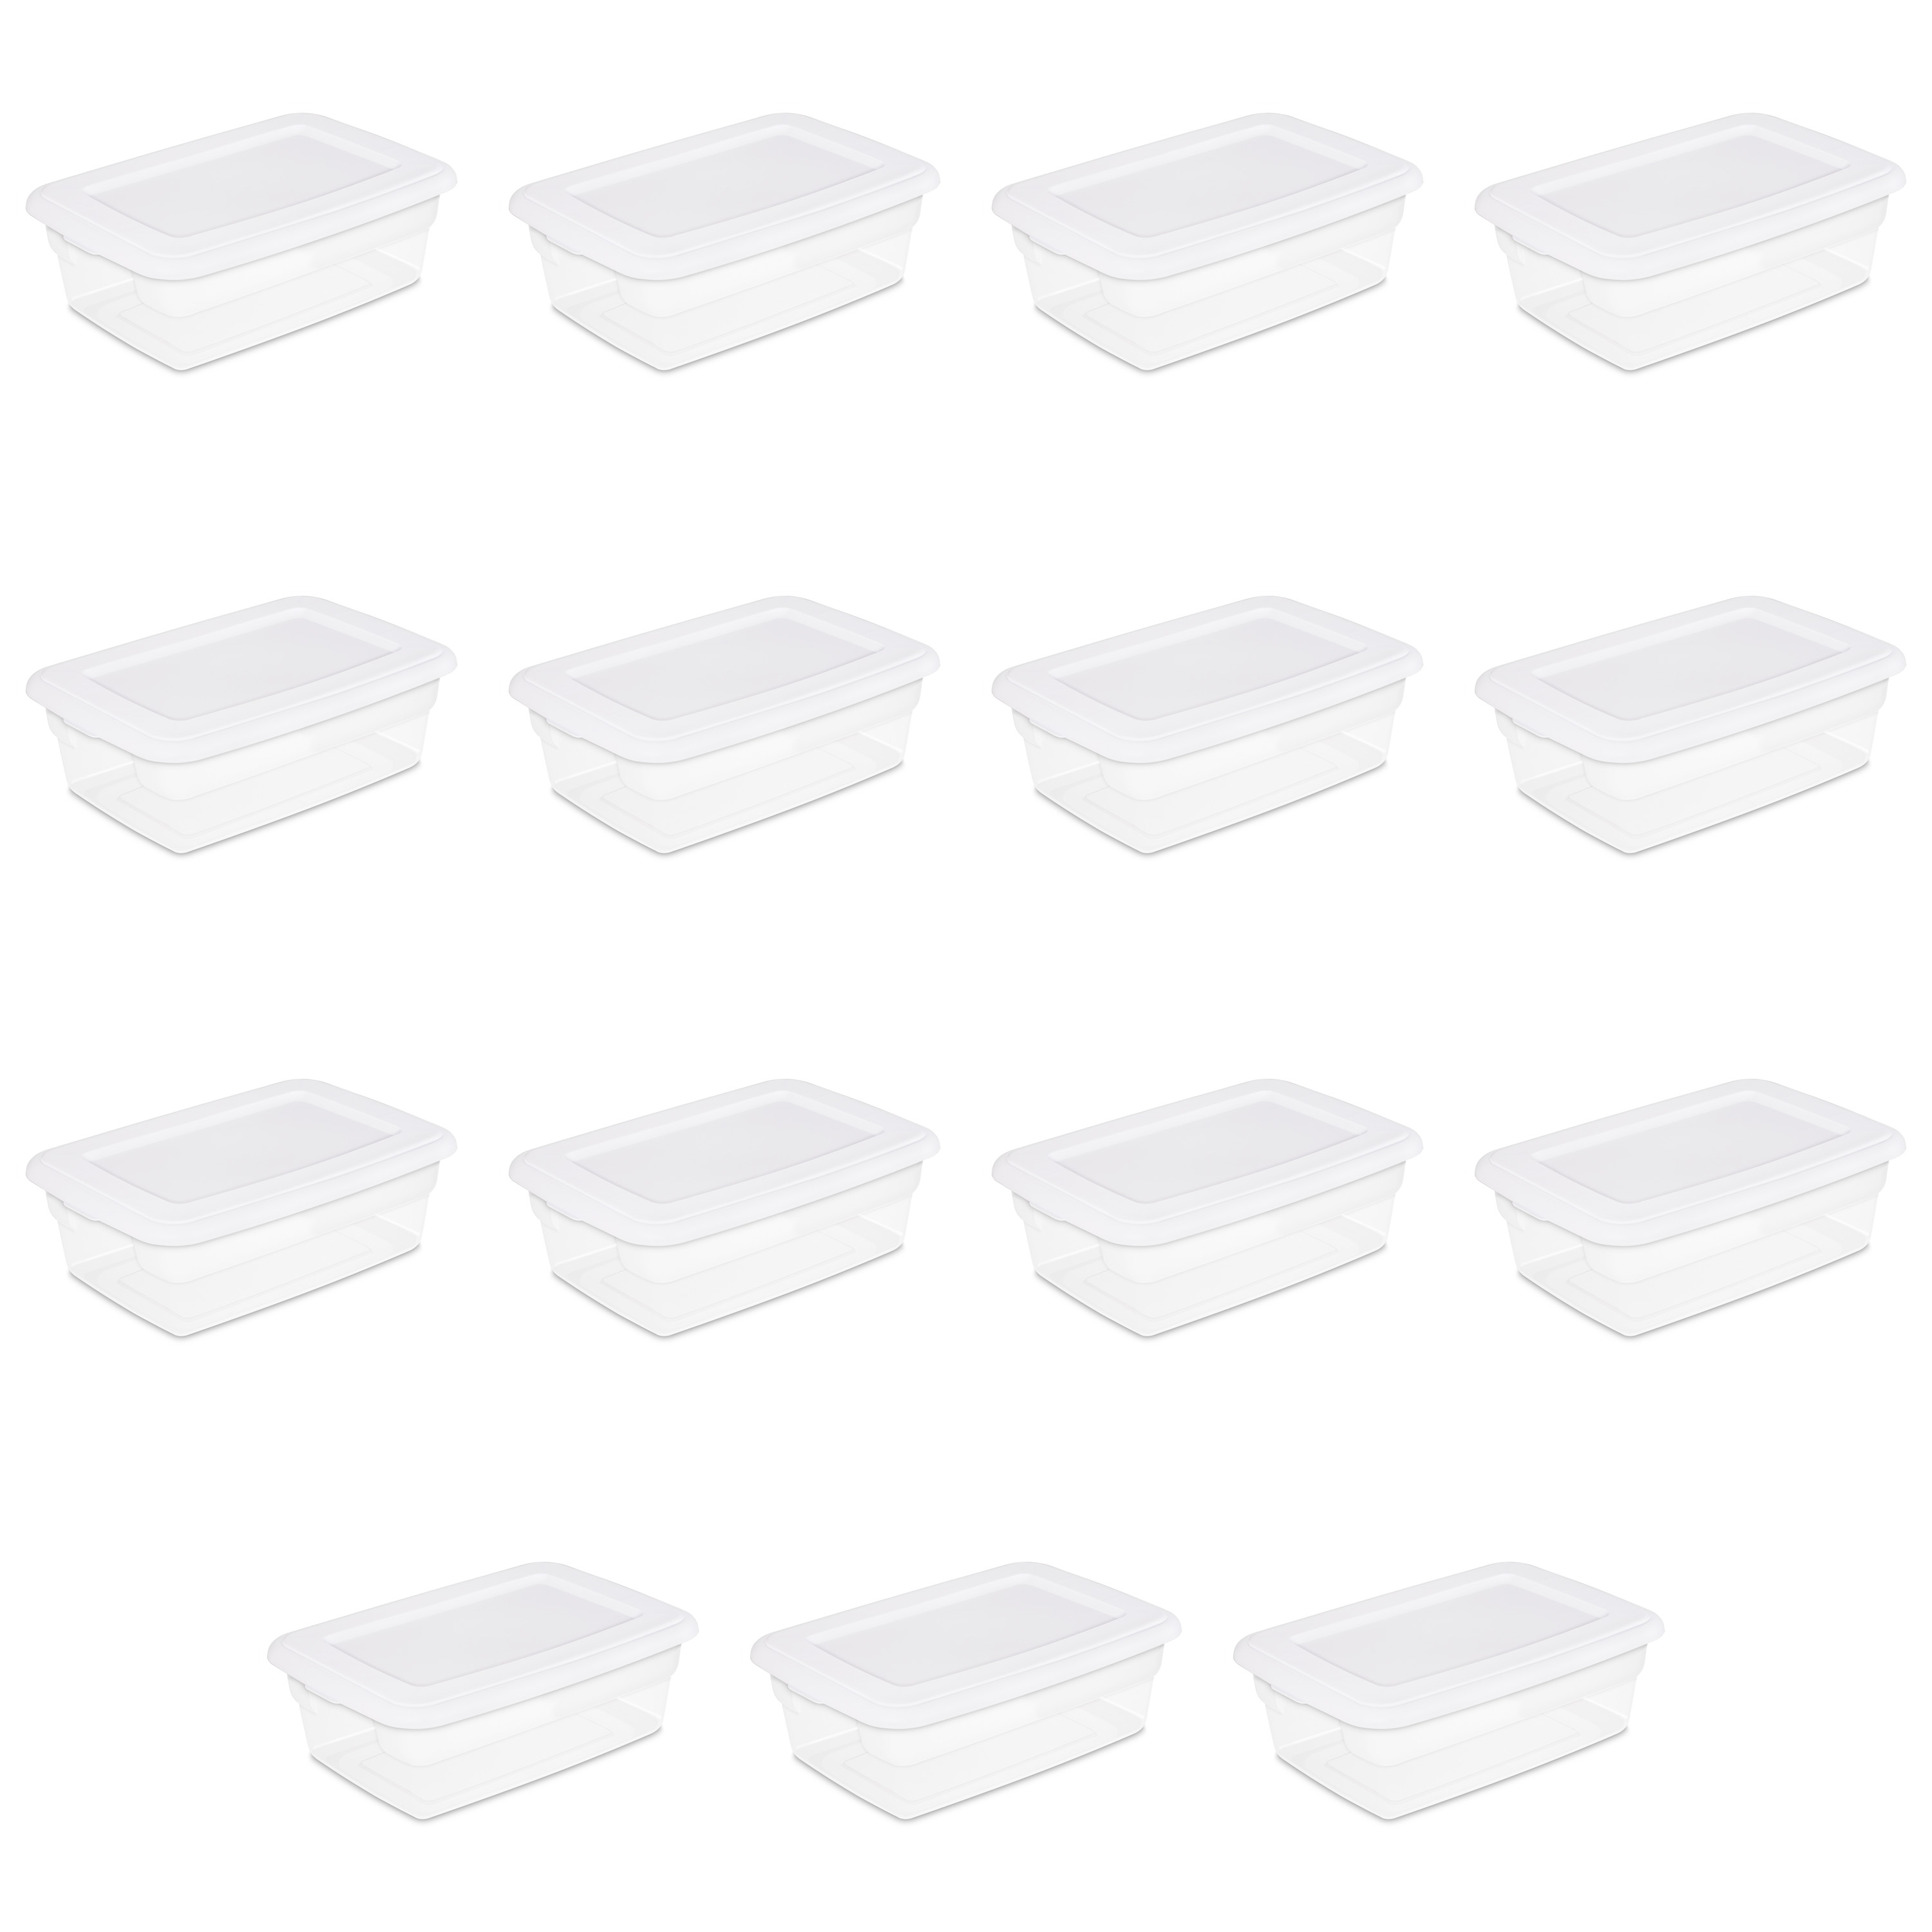 Sterilite 12 Qt. Storage Box Plastic, White, Set of 15 - image 1 of 9